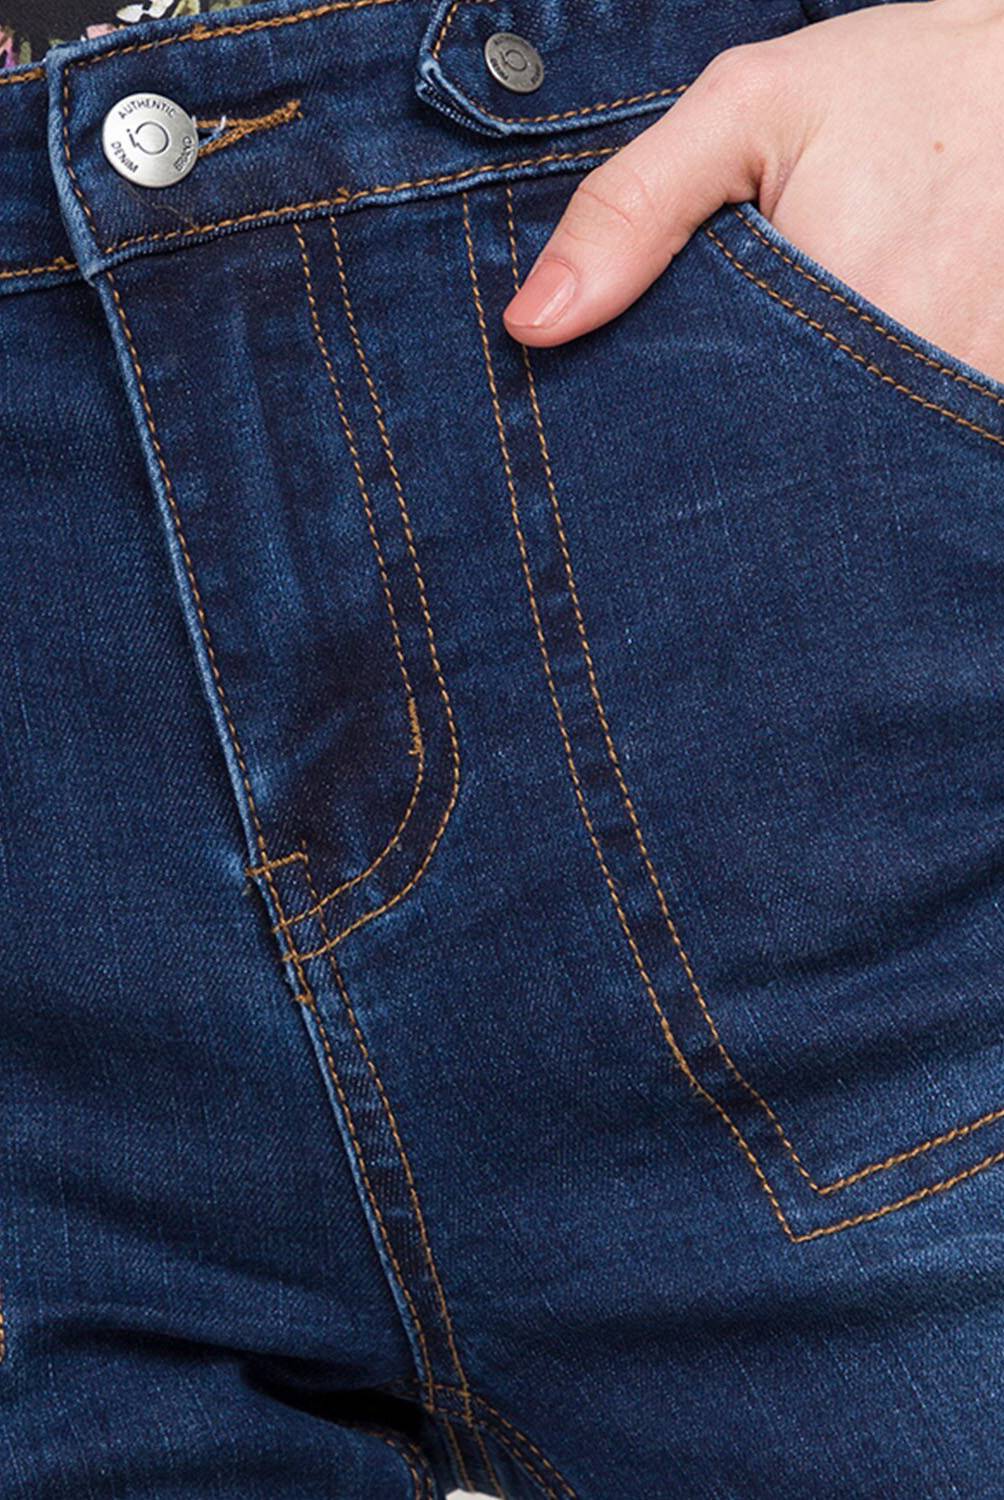 IO - Jeans De Algodón Mujer